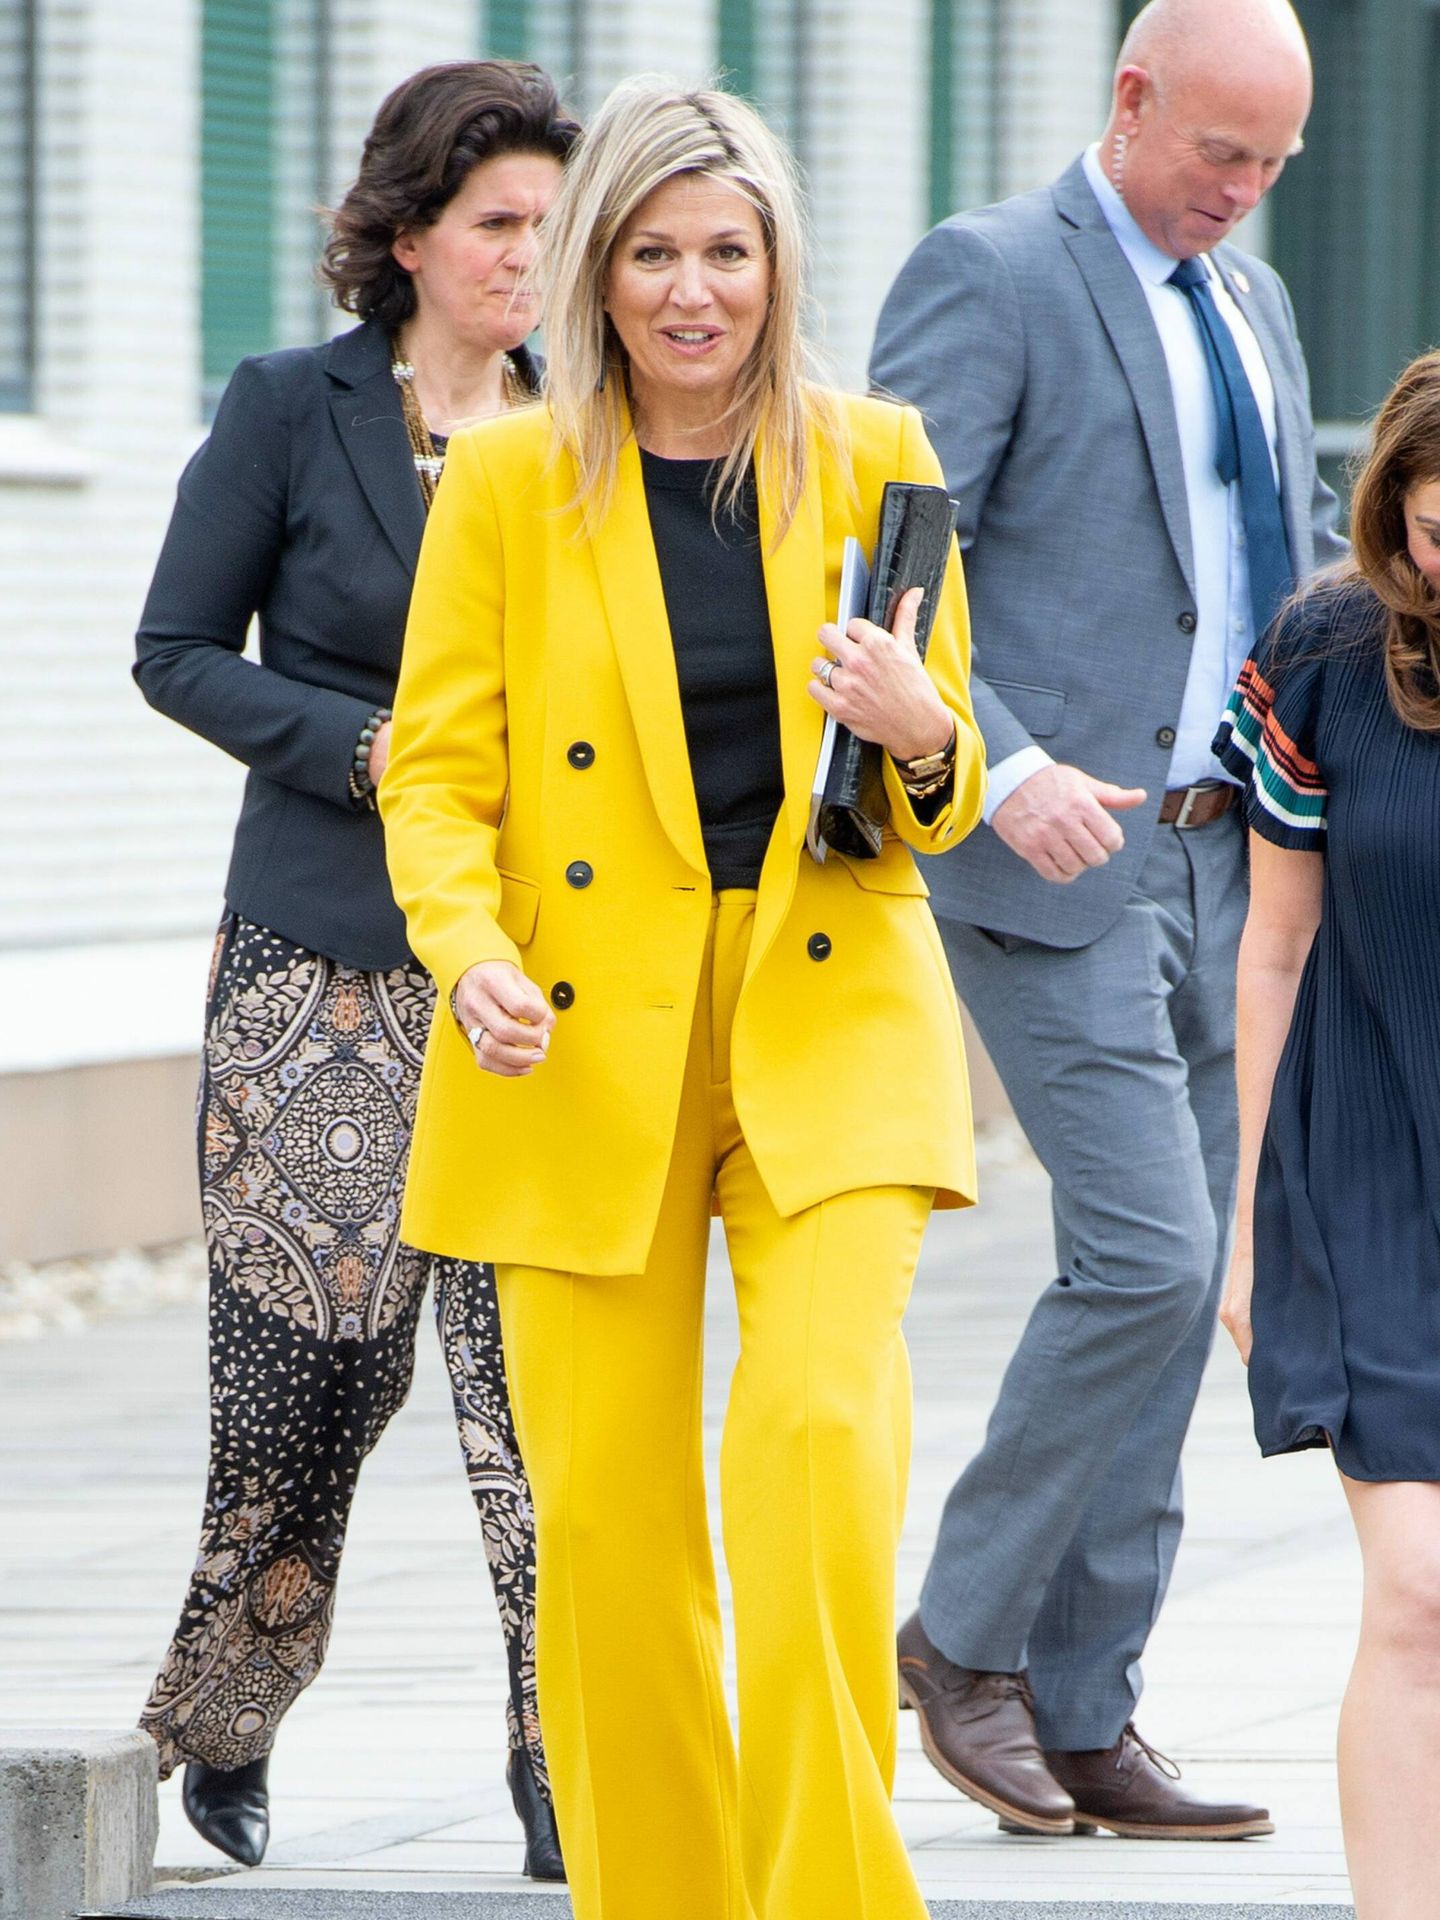 La reina Máxima, con el traje amarillo de Zara. (Cordon Press)